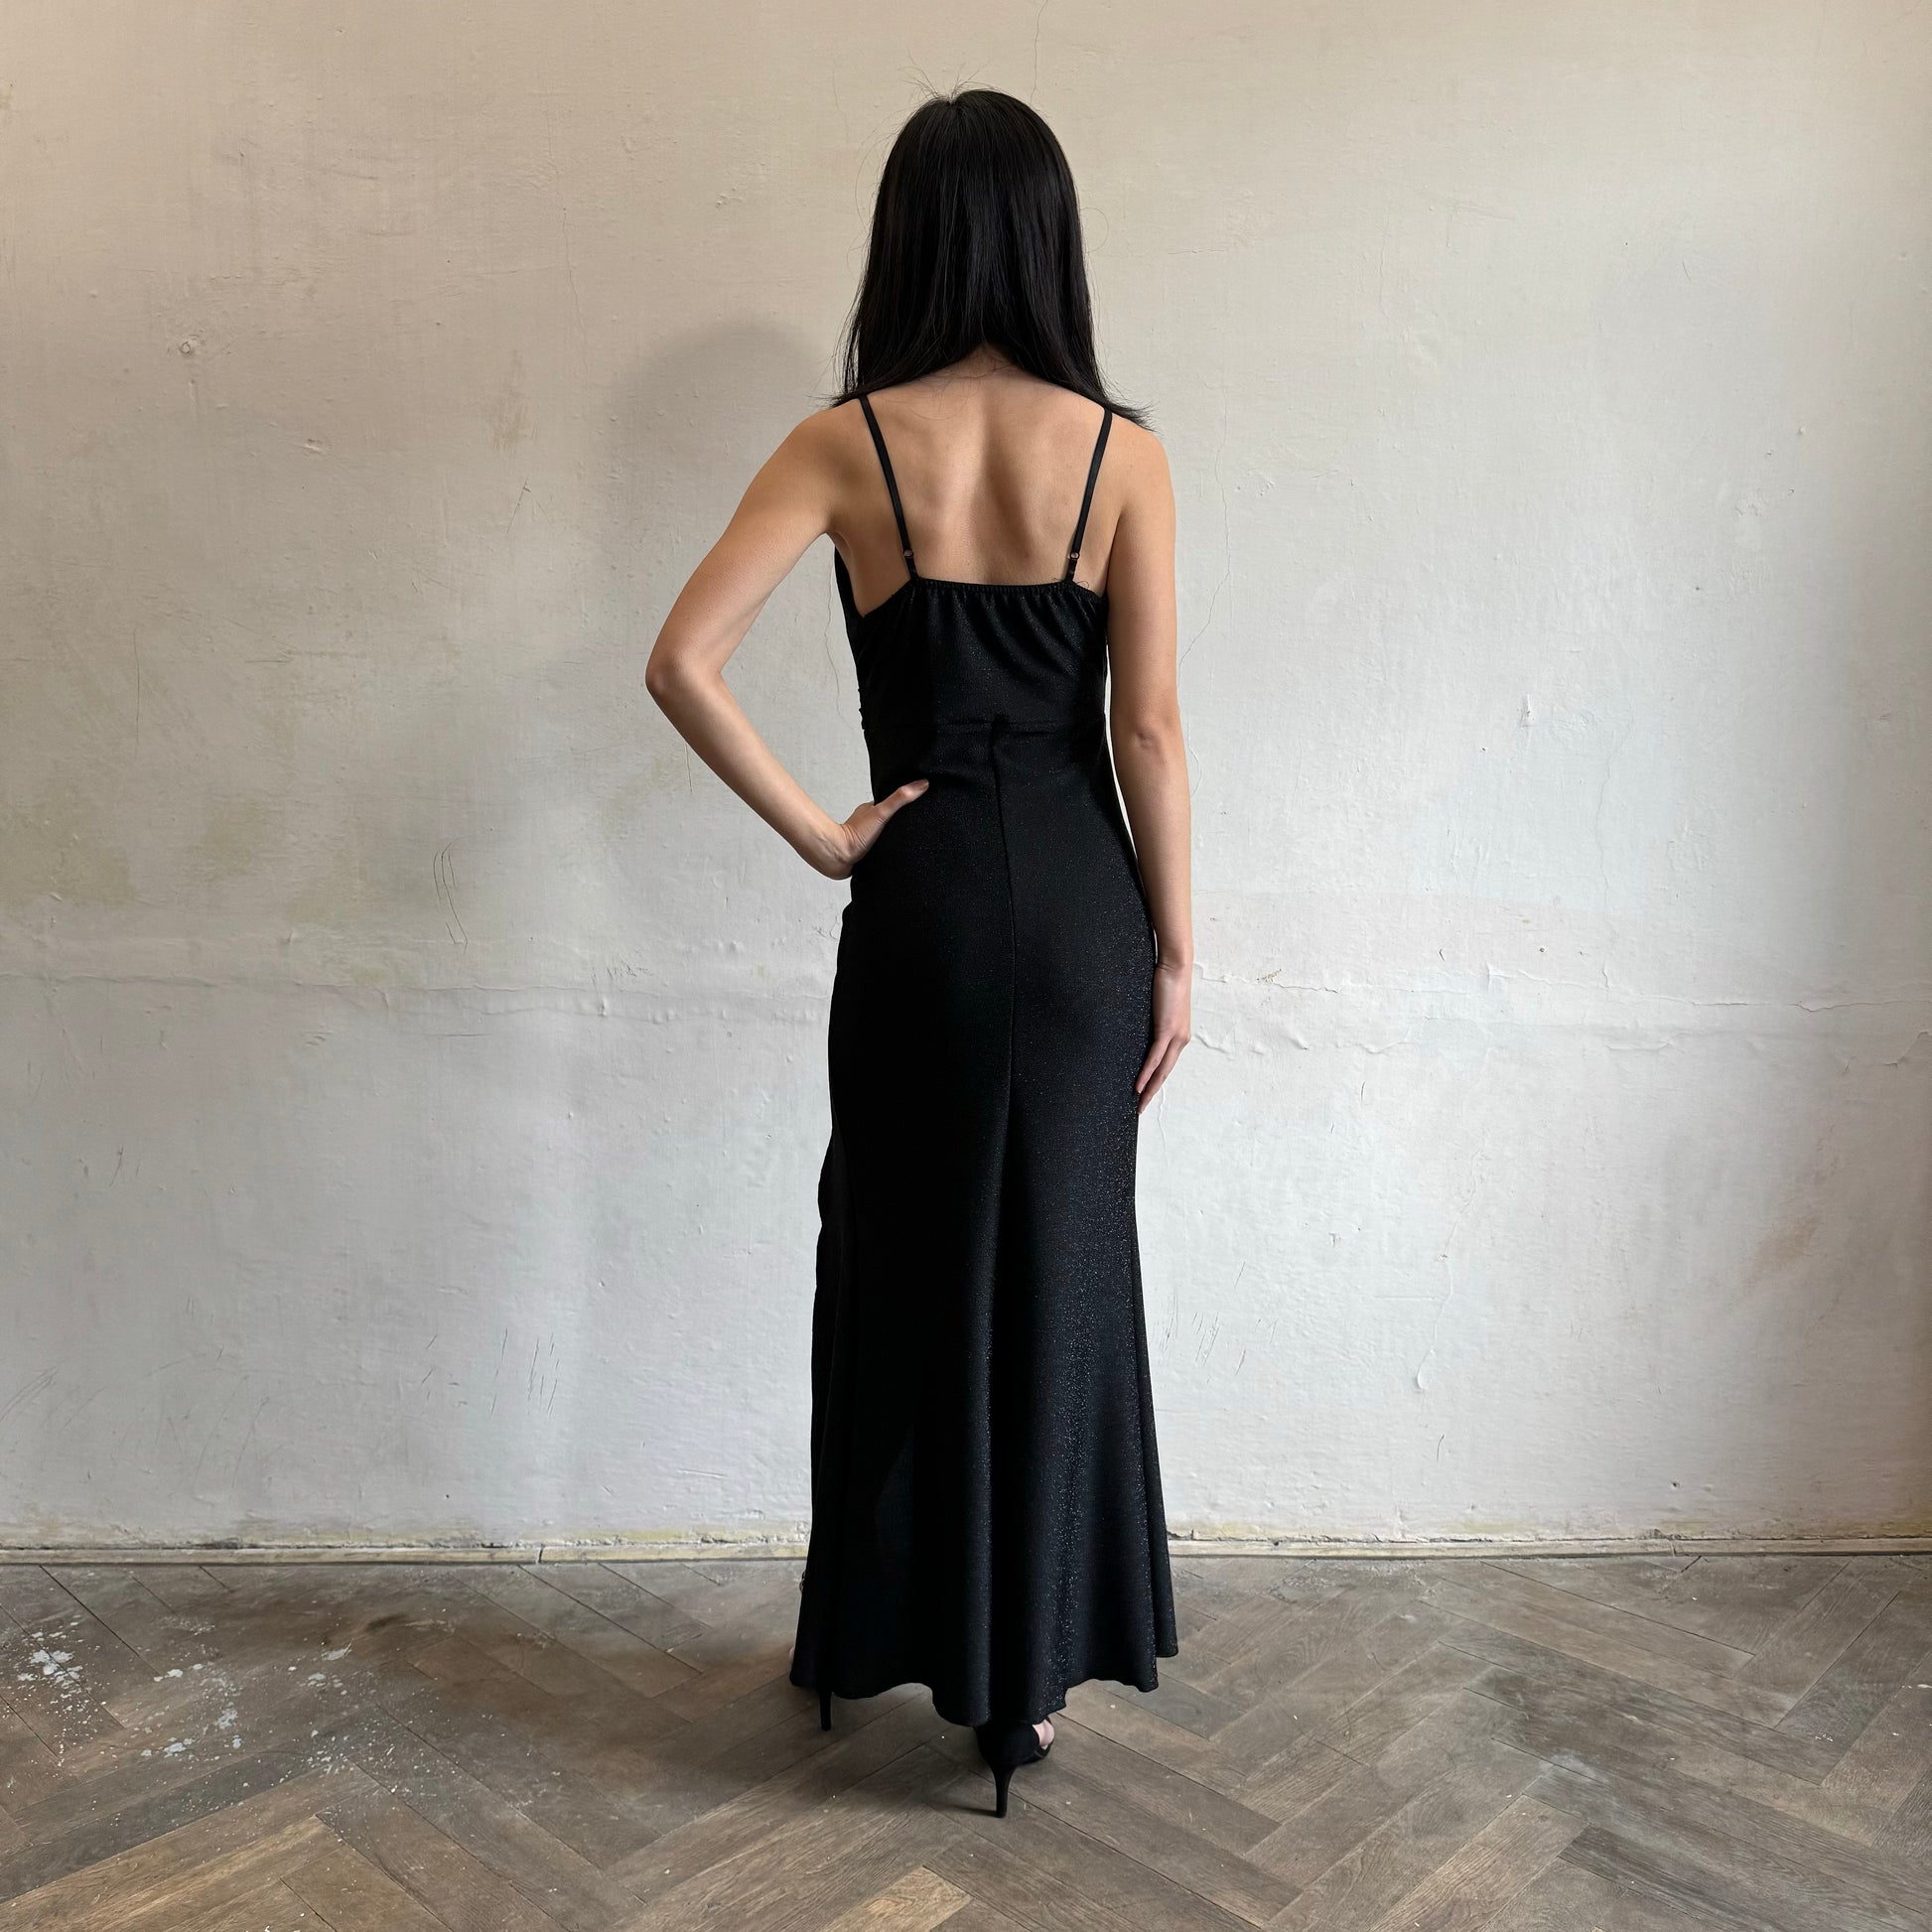 Modelka asijského původu pózující zezadu se třpytivými společenskými šaty v černé barvě